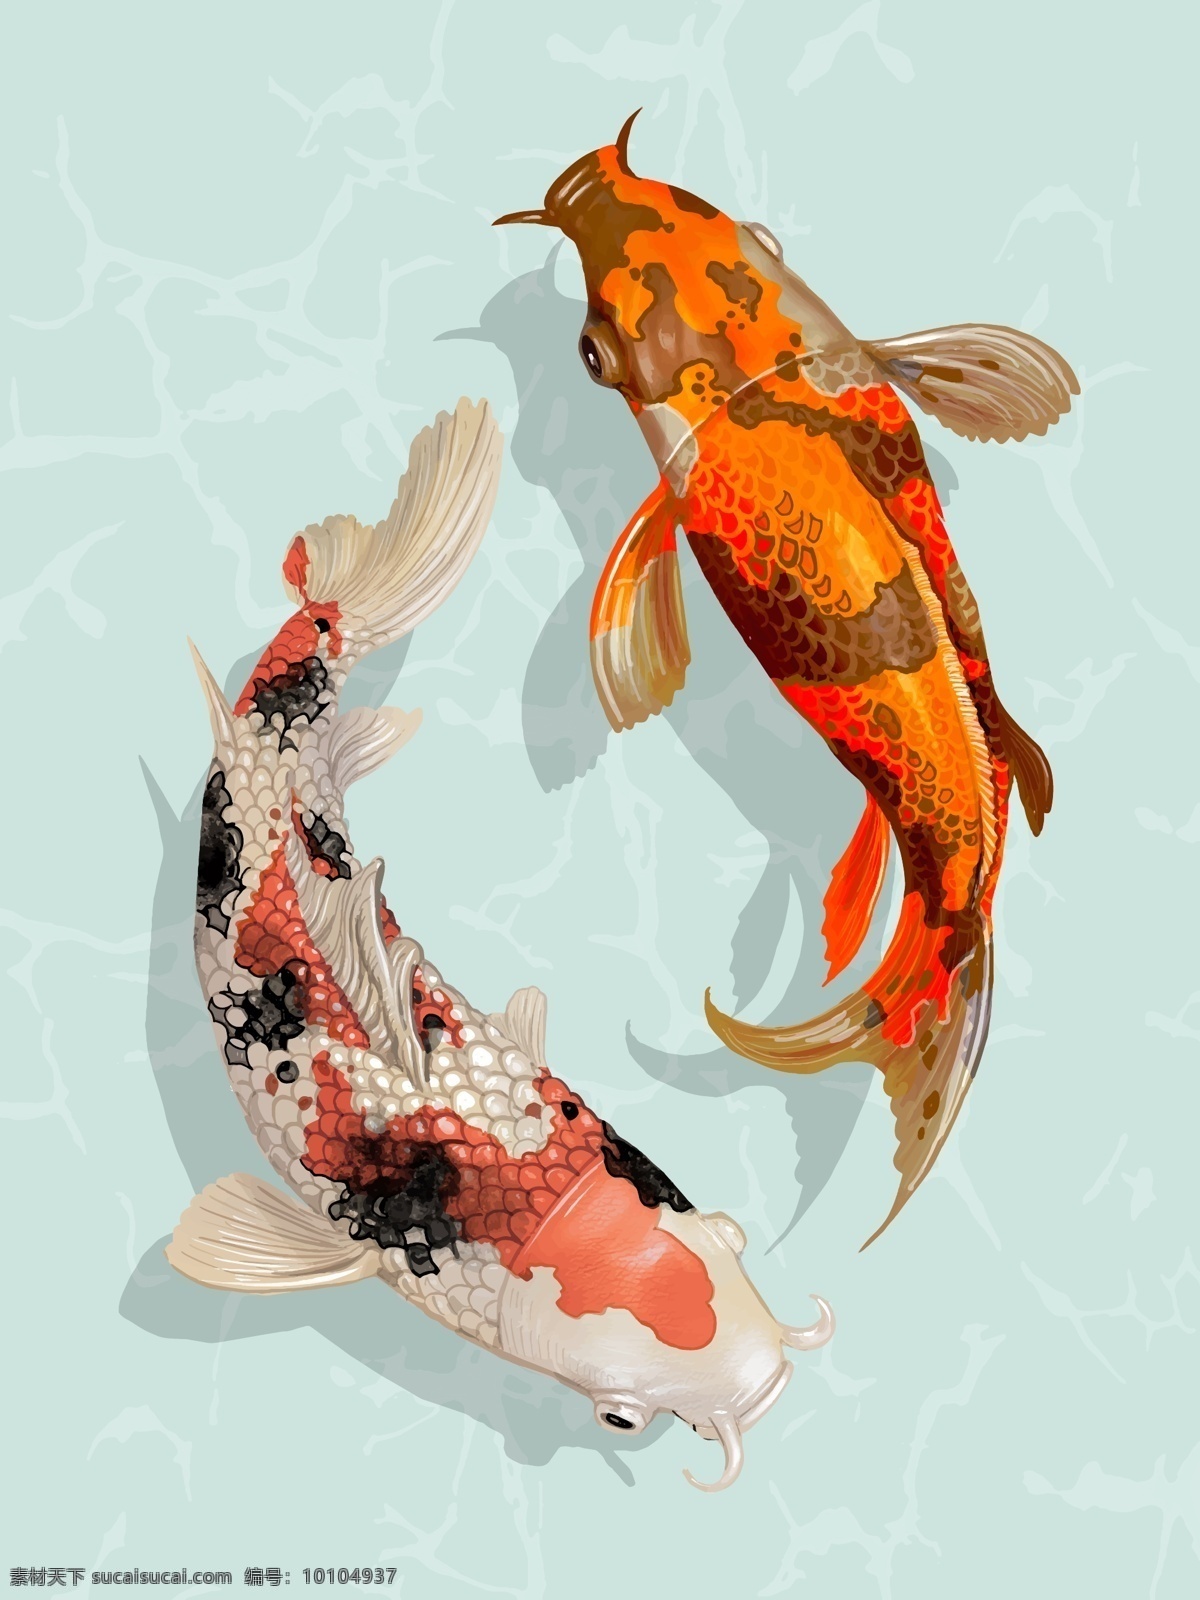 锦鲤鱼 两条 日本 锦鲤 鱼 日本锦鲤 动物 生物世界 鱼类